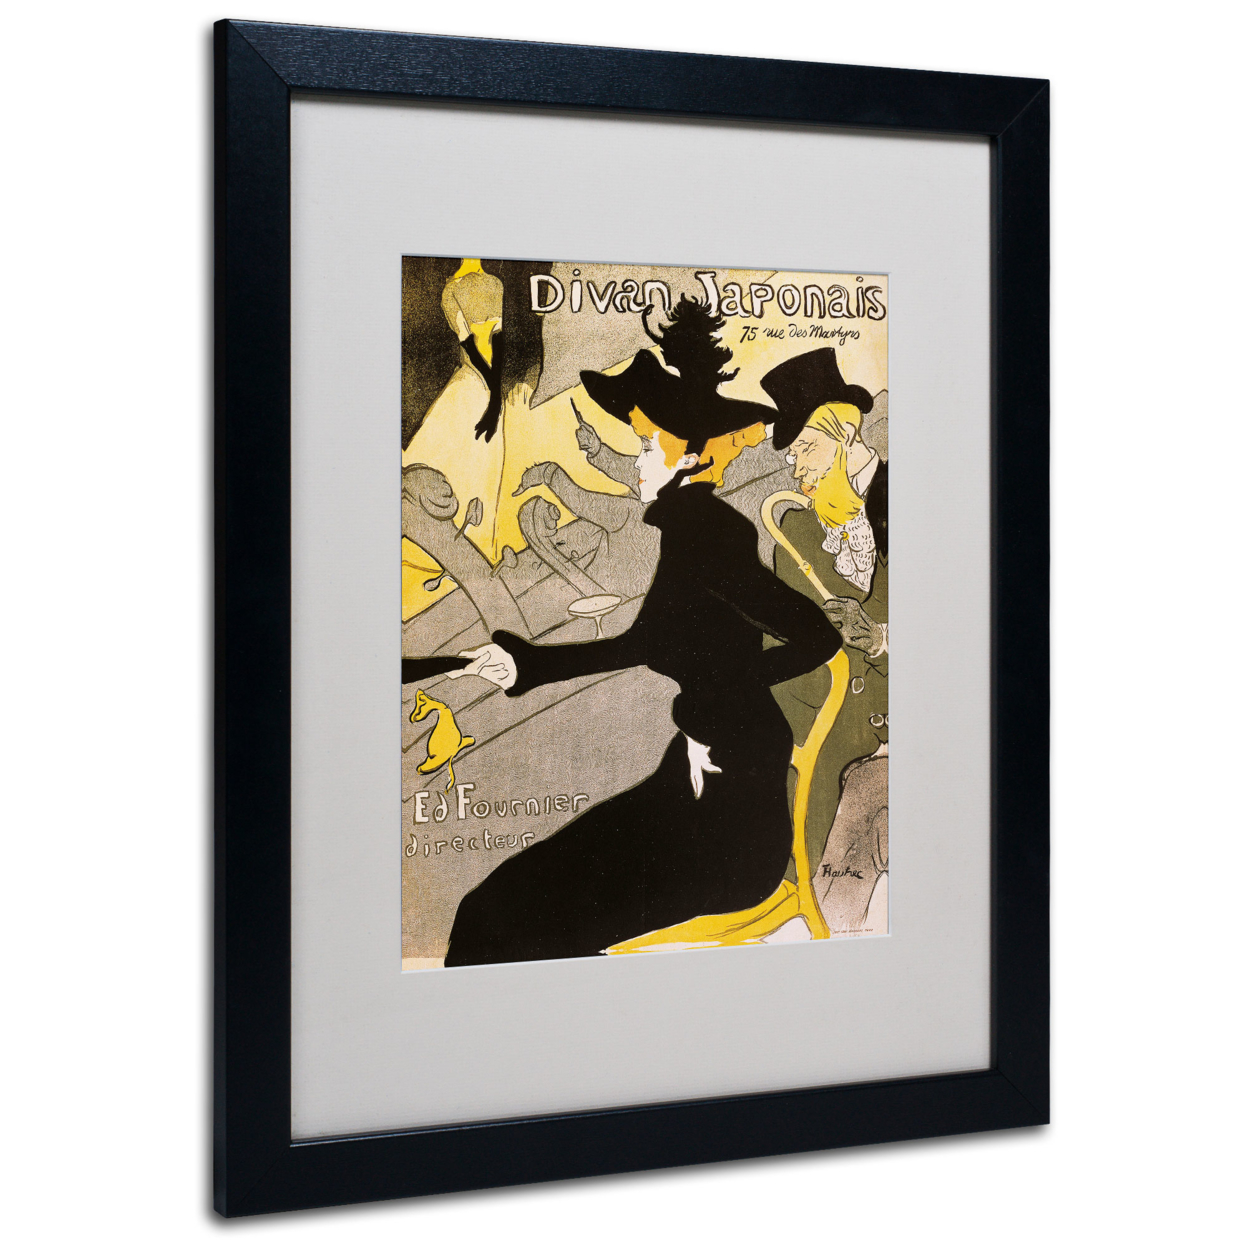 Henri Toulouse-Lautrec 'Divan Japonais' Black Wooden Framed Art 18 X 22 Inches